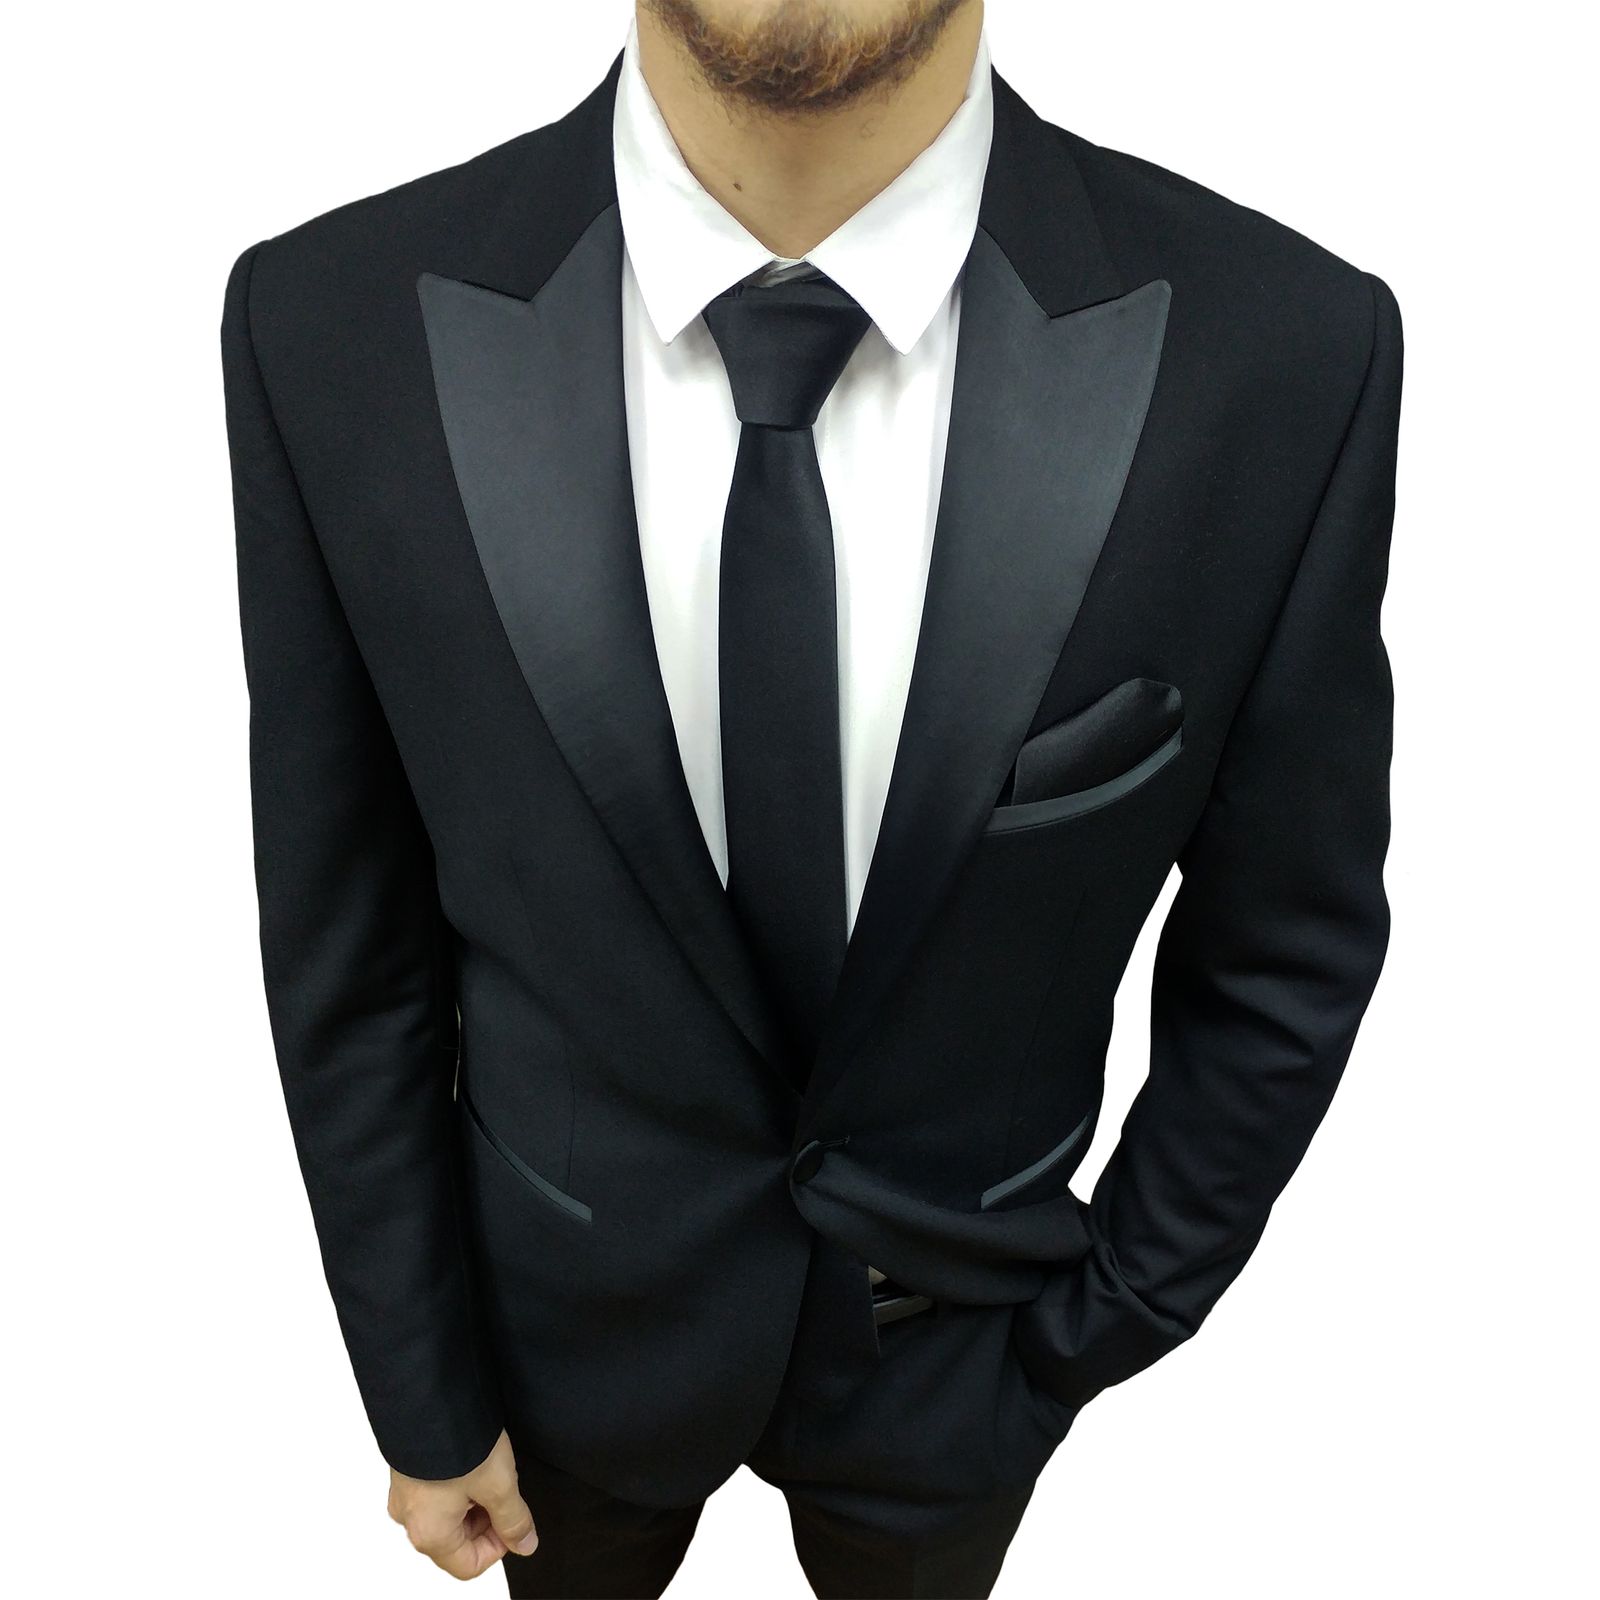 ست کراوات و دستمال جیب مردانه مدل b1 -  - 2